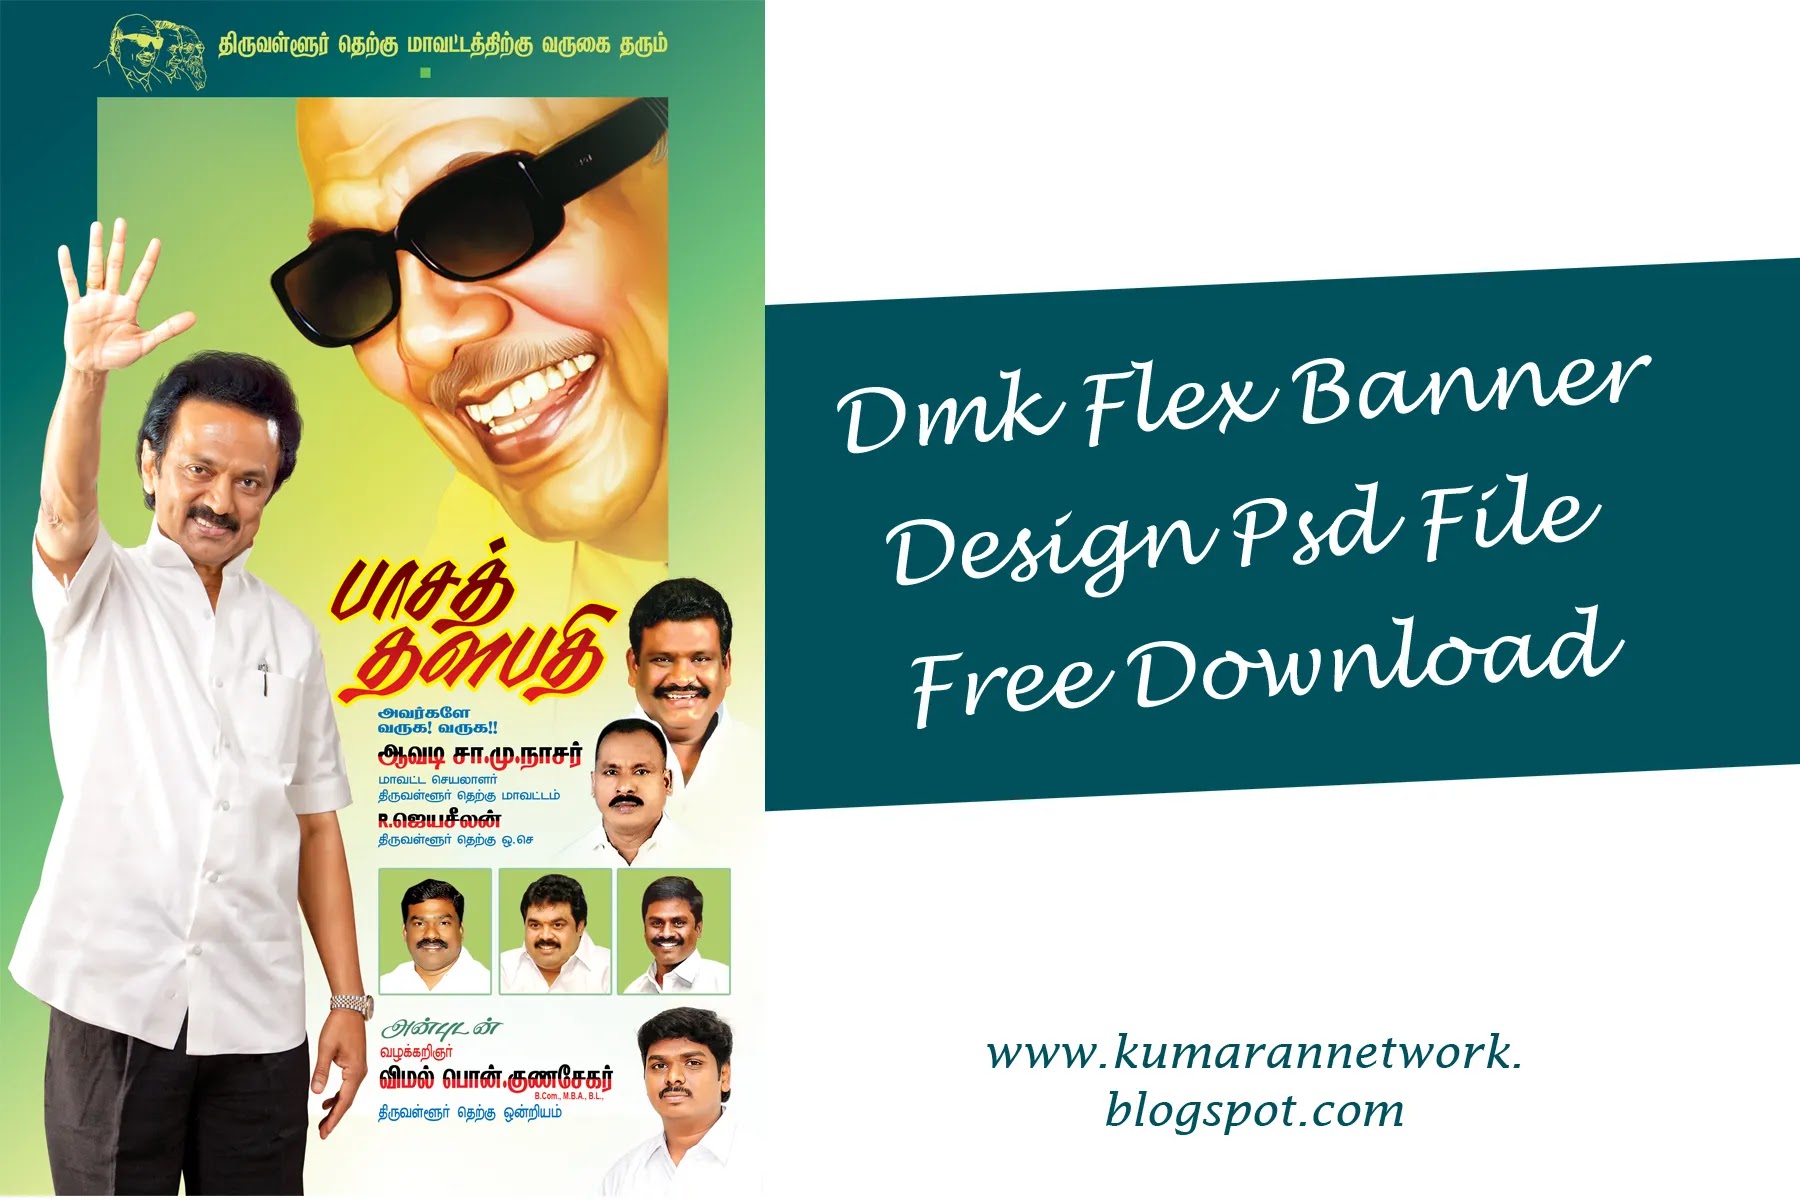 Political Dmk Flex Design psd File Free download - Kumaran Network